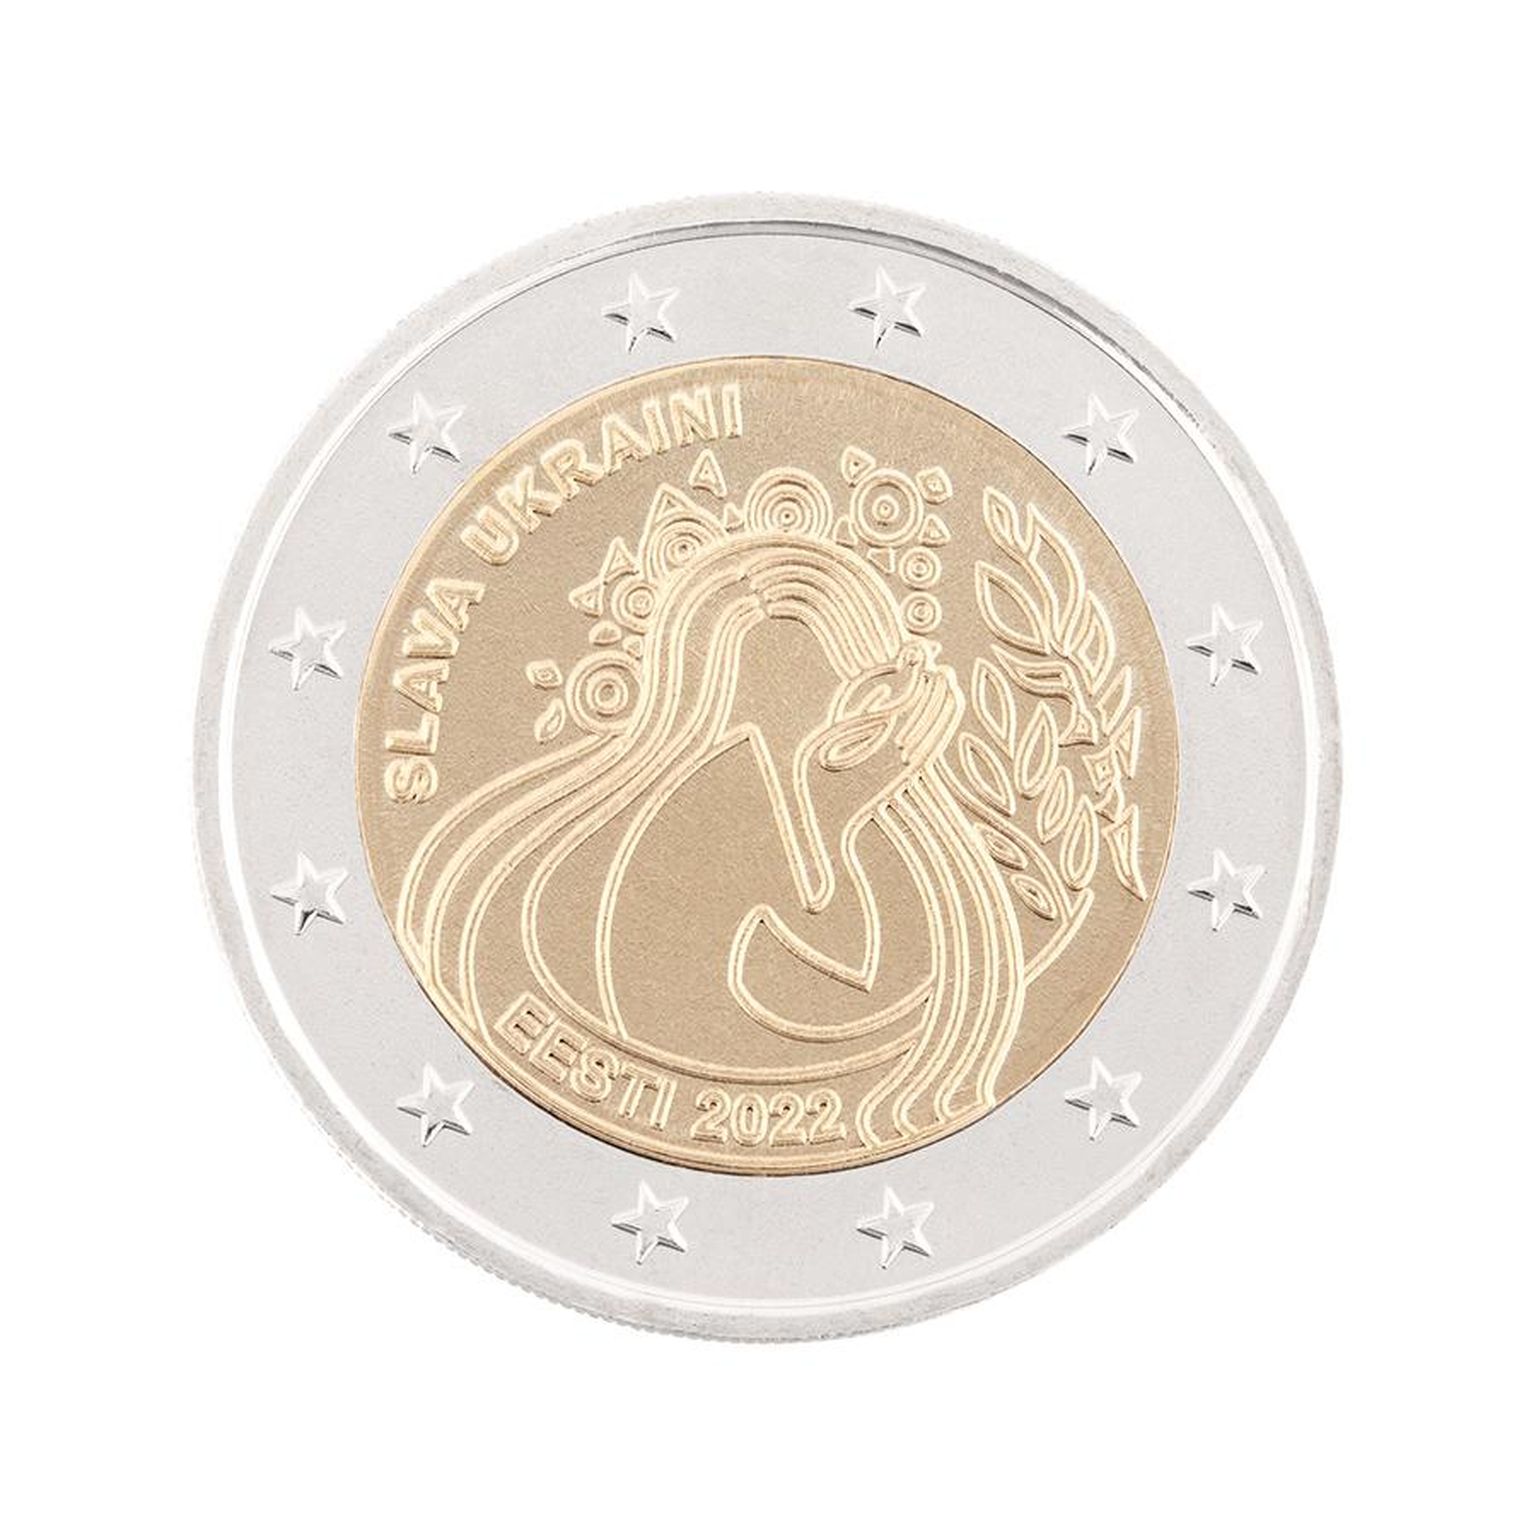 В обращение поступят посвященные Украине монеты достоинством 2 евро.